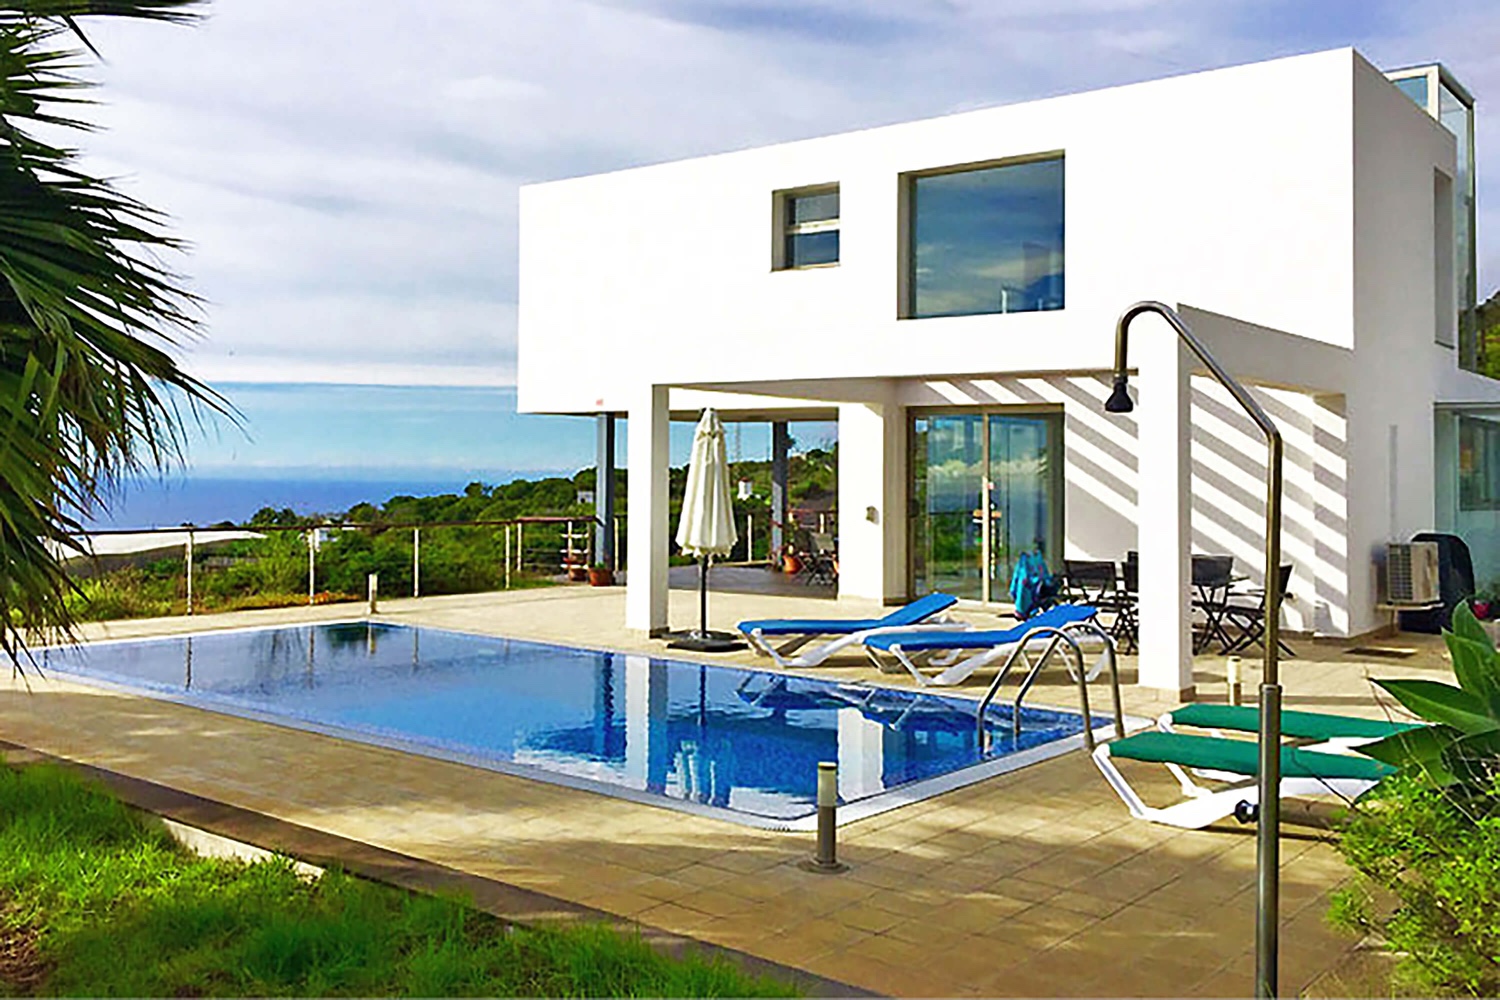 Lyxigt fritidshus att hyra på La Palma med modern arkitektur med stor pool och vacker panoramautsikt över havet